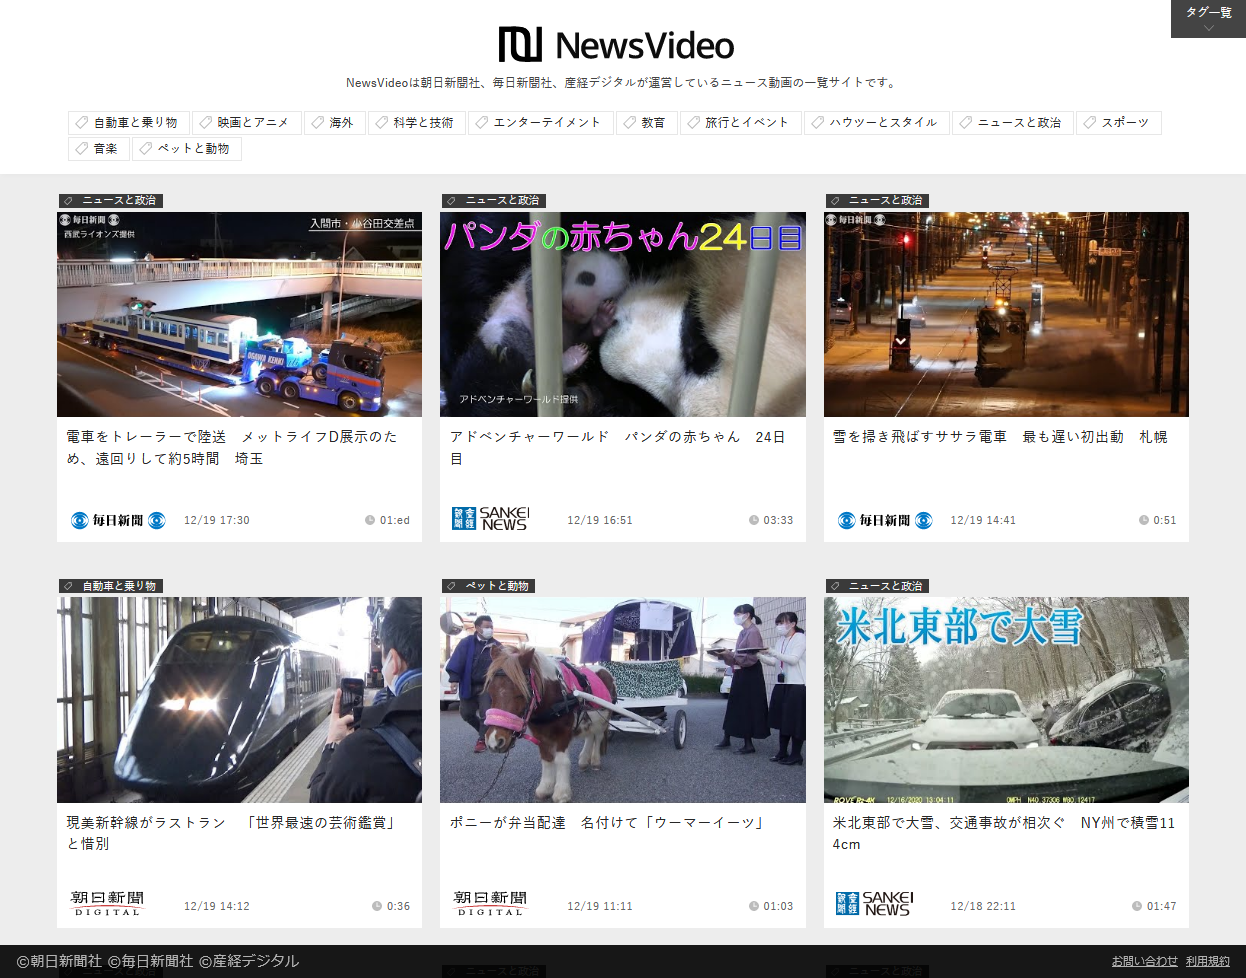 新聞3社、ニュース動画を一元的に視聴できる「NewsVideo」をリリース